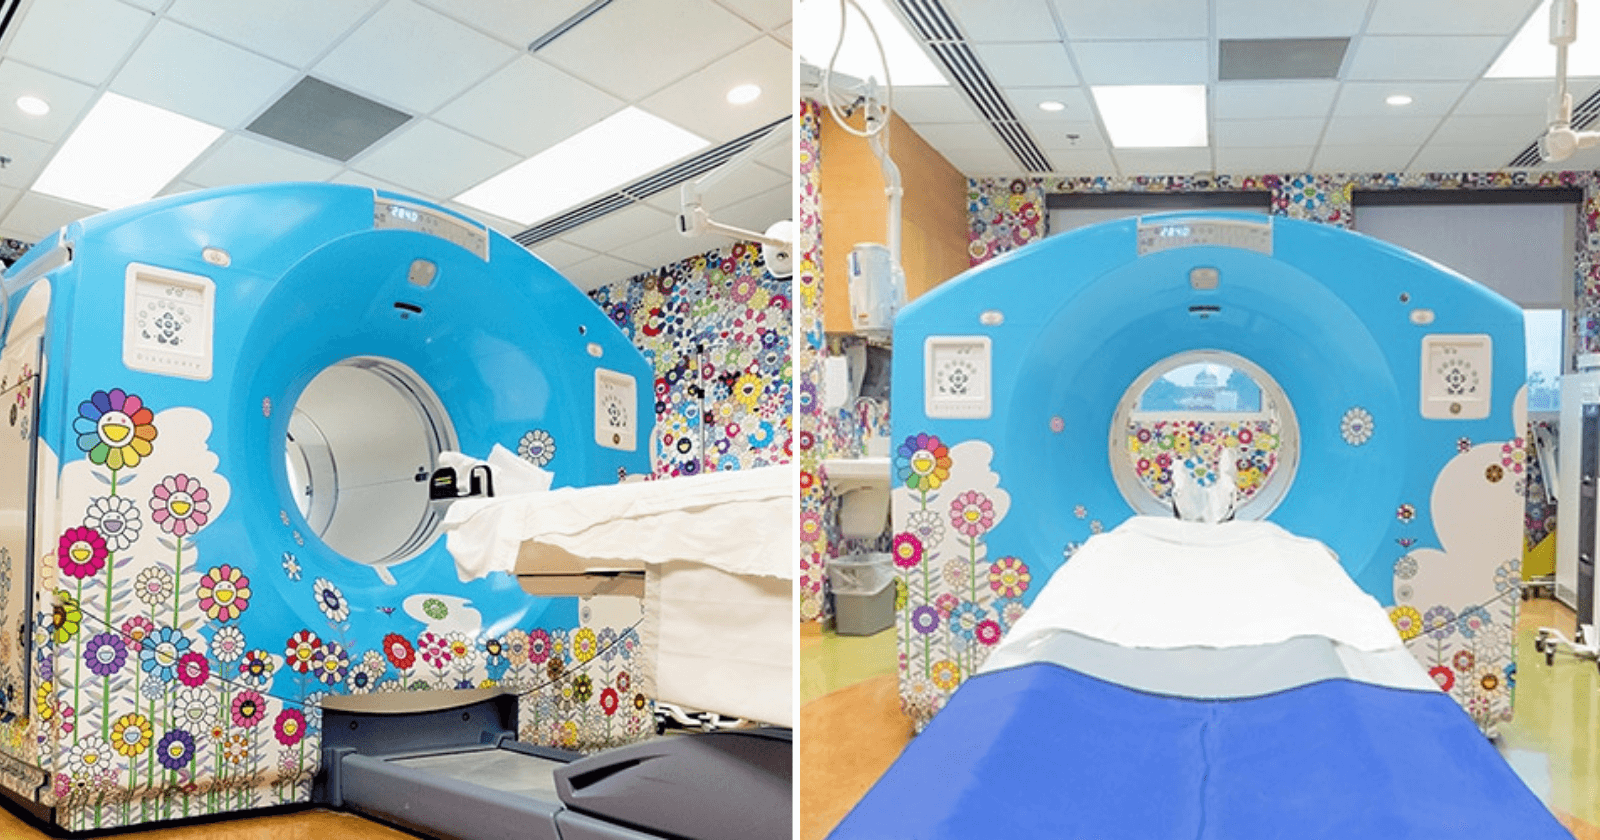 Artista transforma sala de tomografia infantil para alegrar crianças que chegam ao local